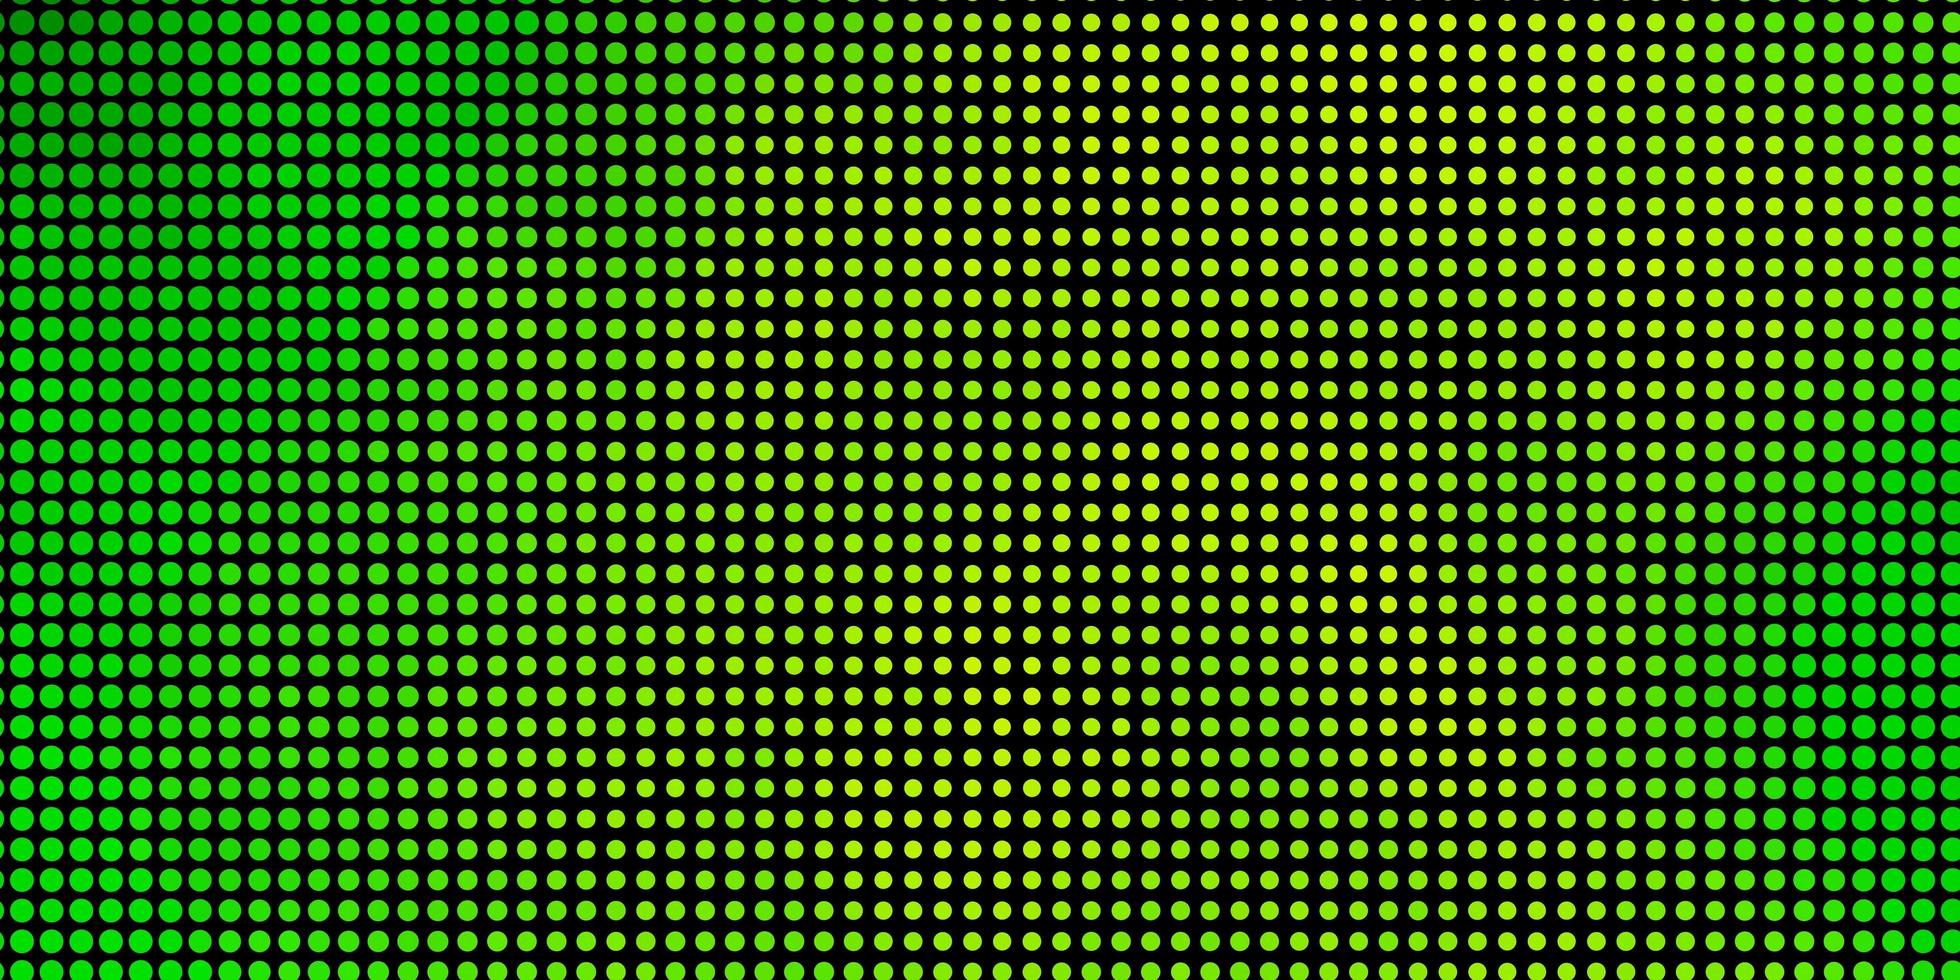 texture vecteur vert clair et jaune avec des cercles. disques colorés abstraits sur fond dégradé simple. conception pour vos publicités.